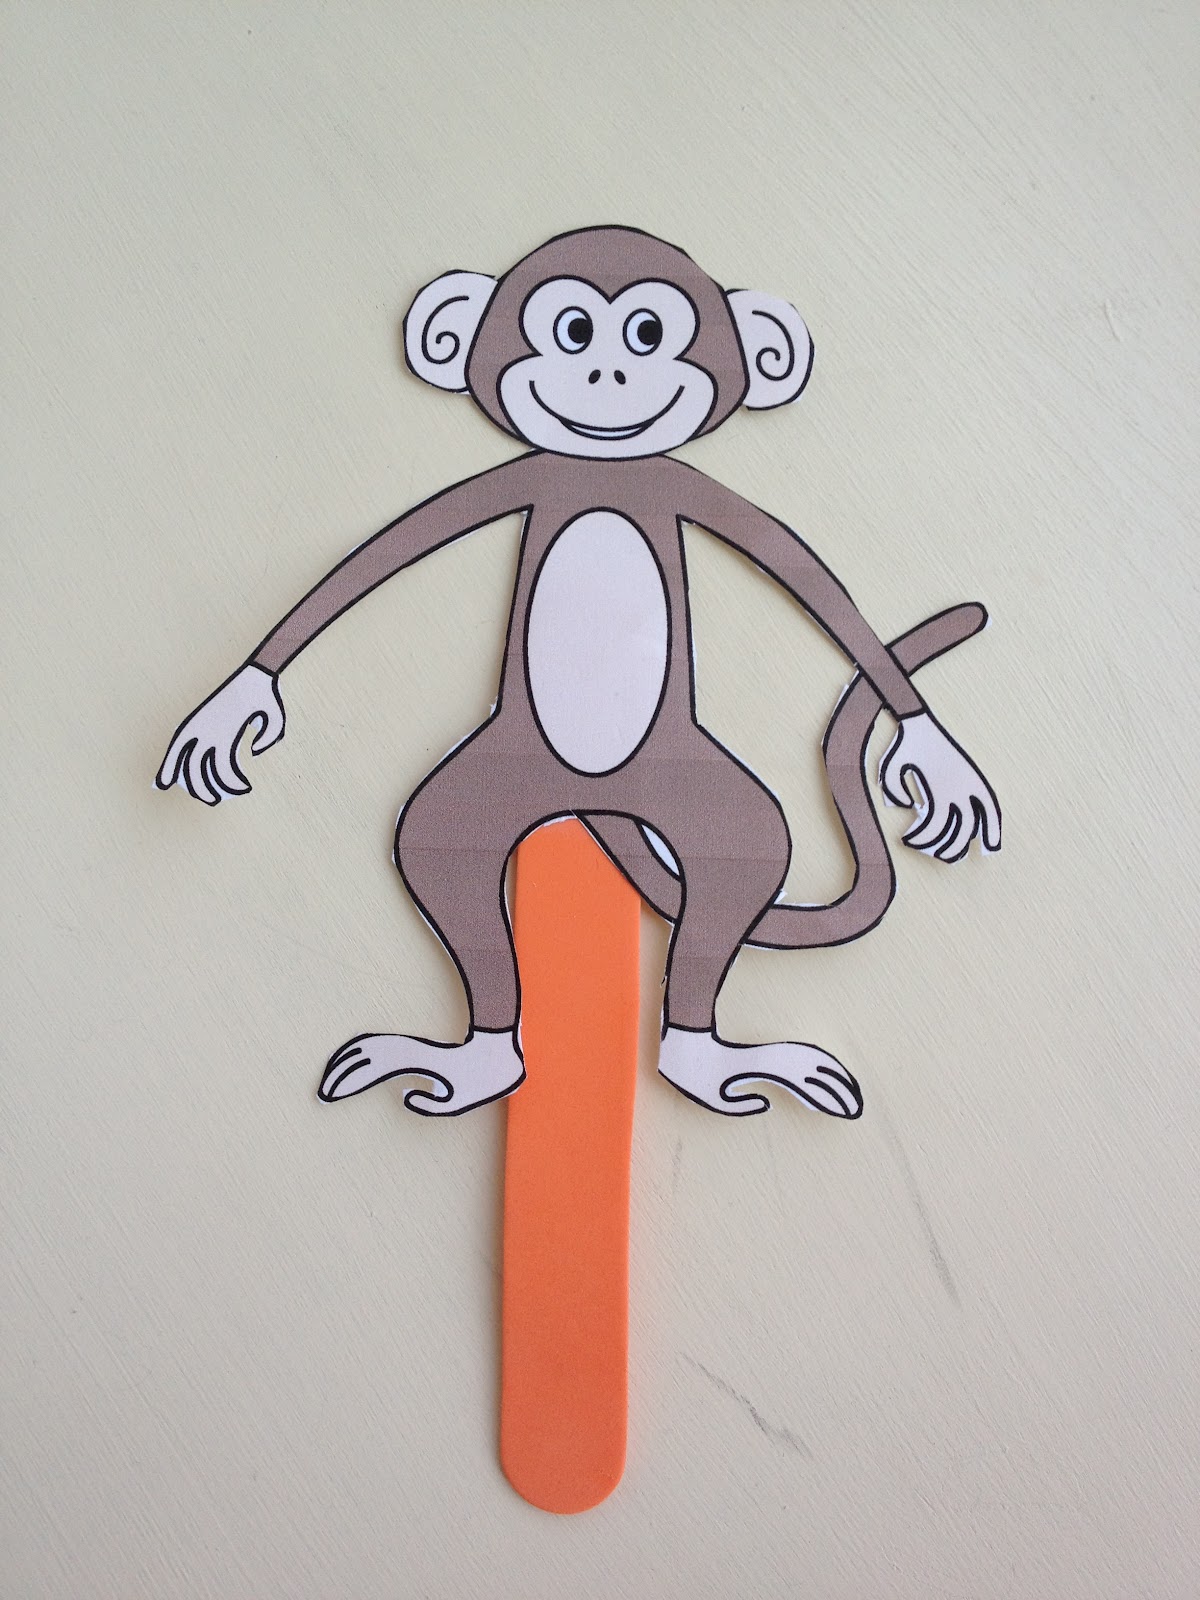 BBNJ Sathyam Class(First Grade) Journal: Monkey Puppet Art Project